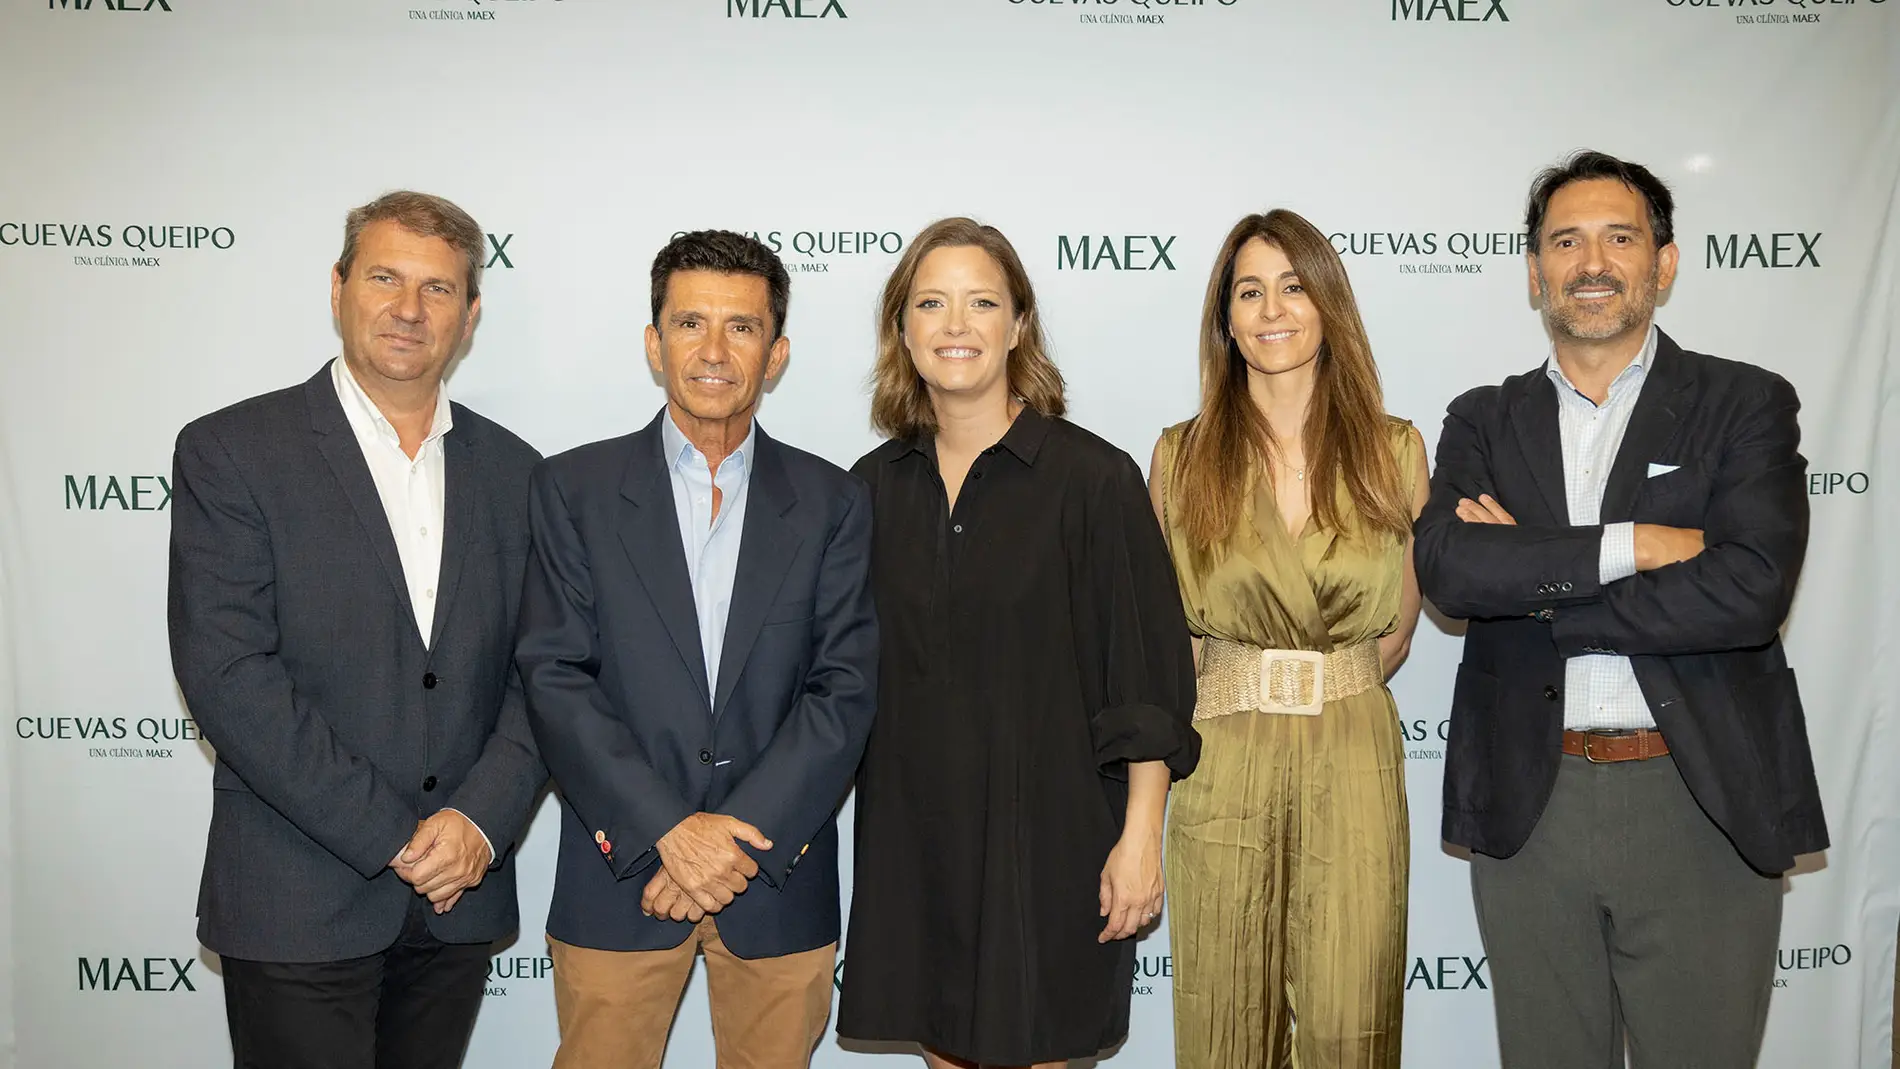 La clínica Cuevas y Queipo de Málaga estrena la imagen de MAEX